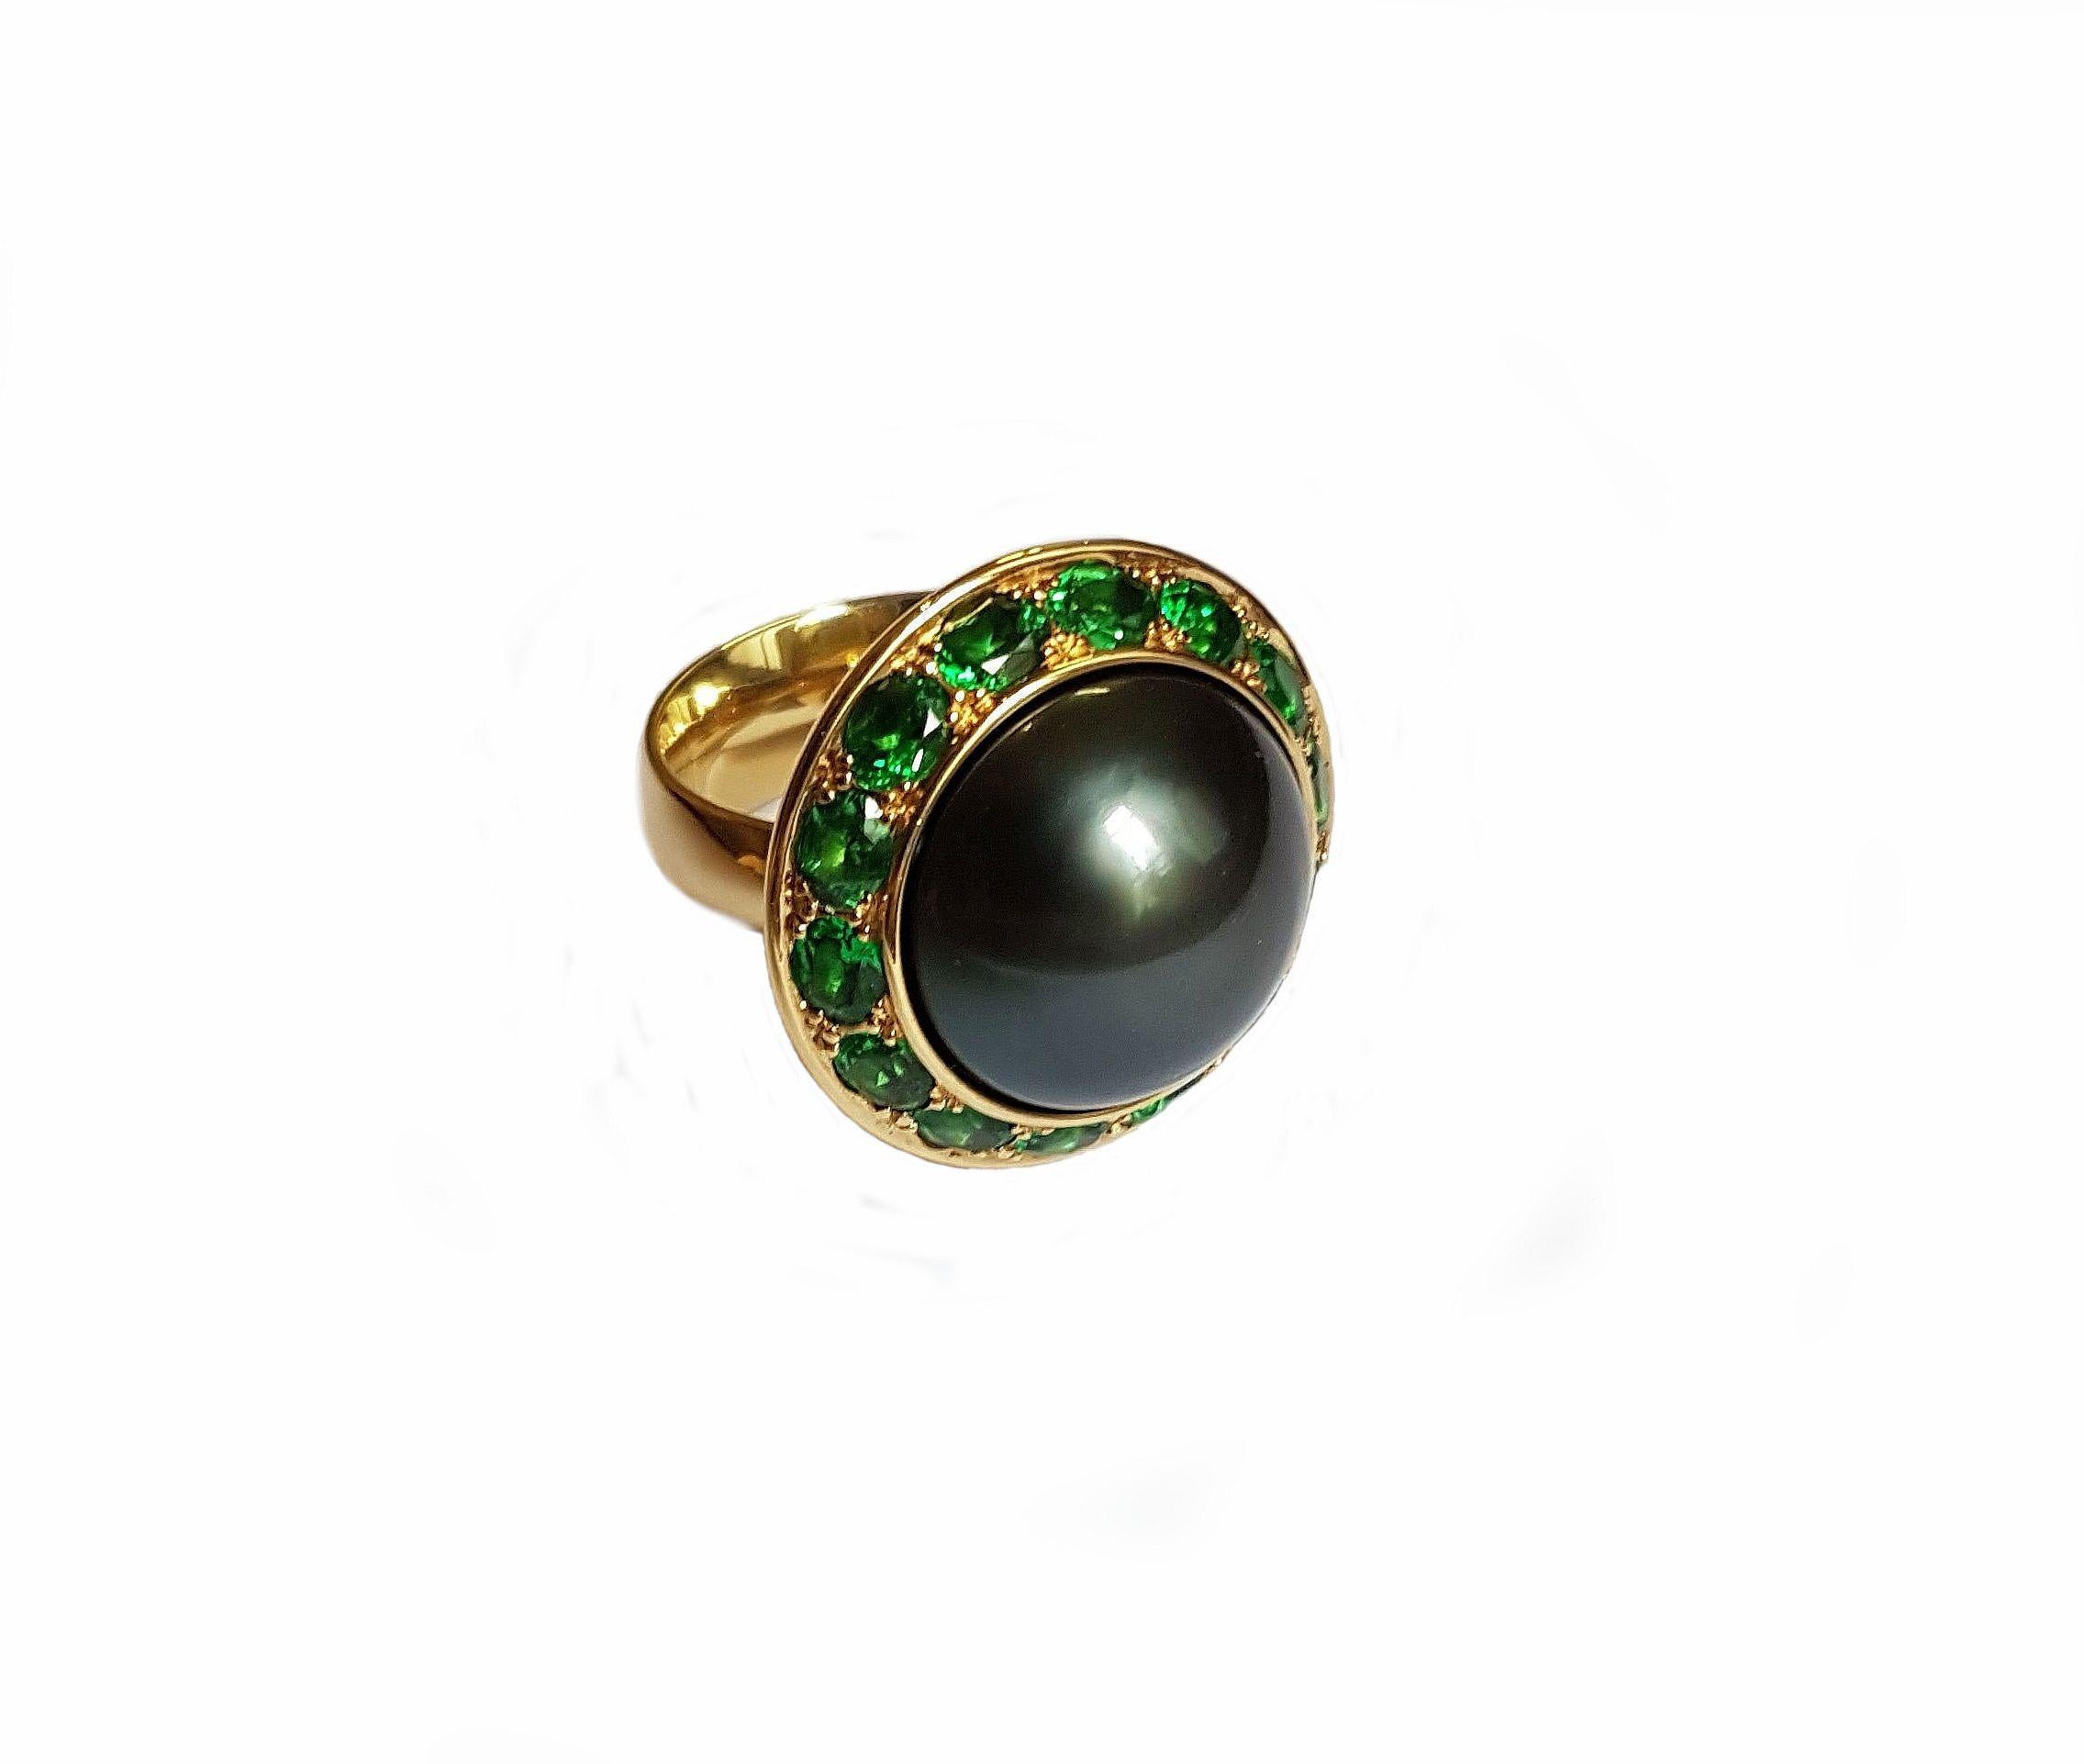 Dieser wunderschöne Ring ist aus 750/0 Gelbgold gefertigt und zeigt eine opulente, naturfarbene Tahiti-Perle von 16 mm mit exzellentem Glanz, umgeben von 12 Tsavoriten mit insgesamt 3,11 Karat. 
Dieser Ring ist ein spektakuläres Geschenk, das sowohl